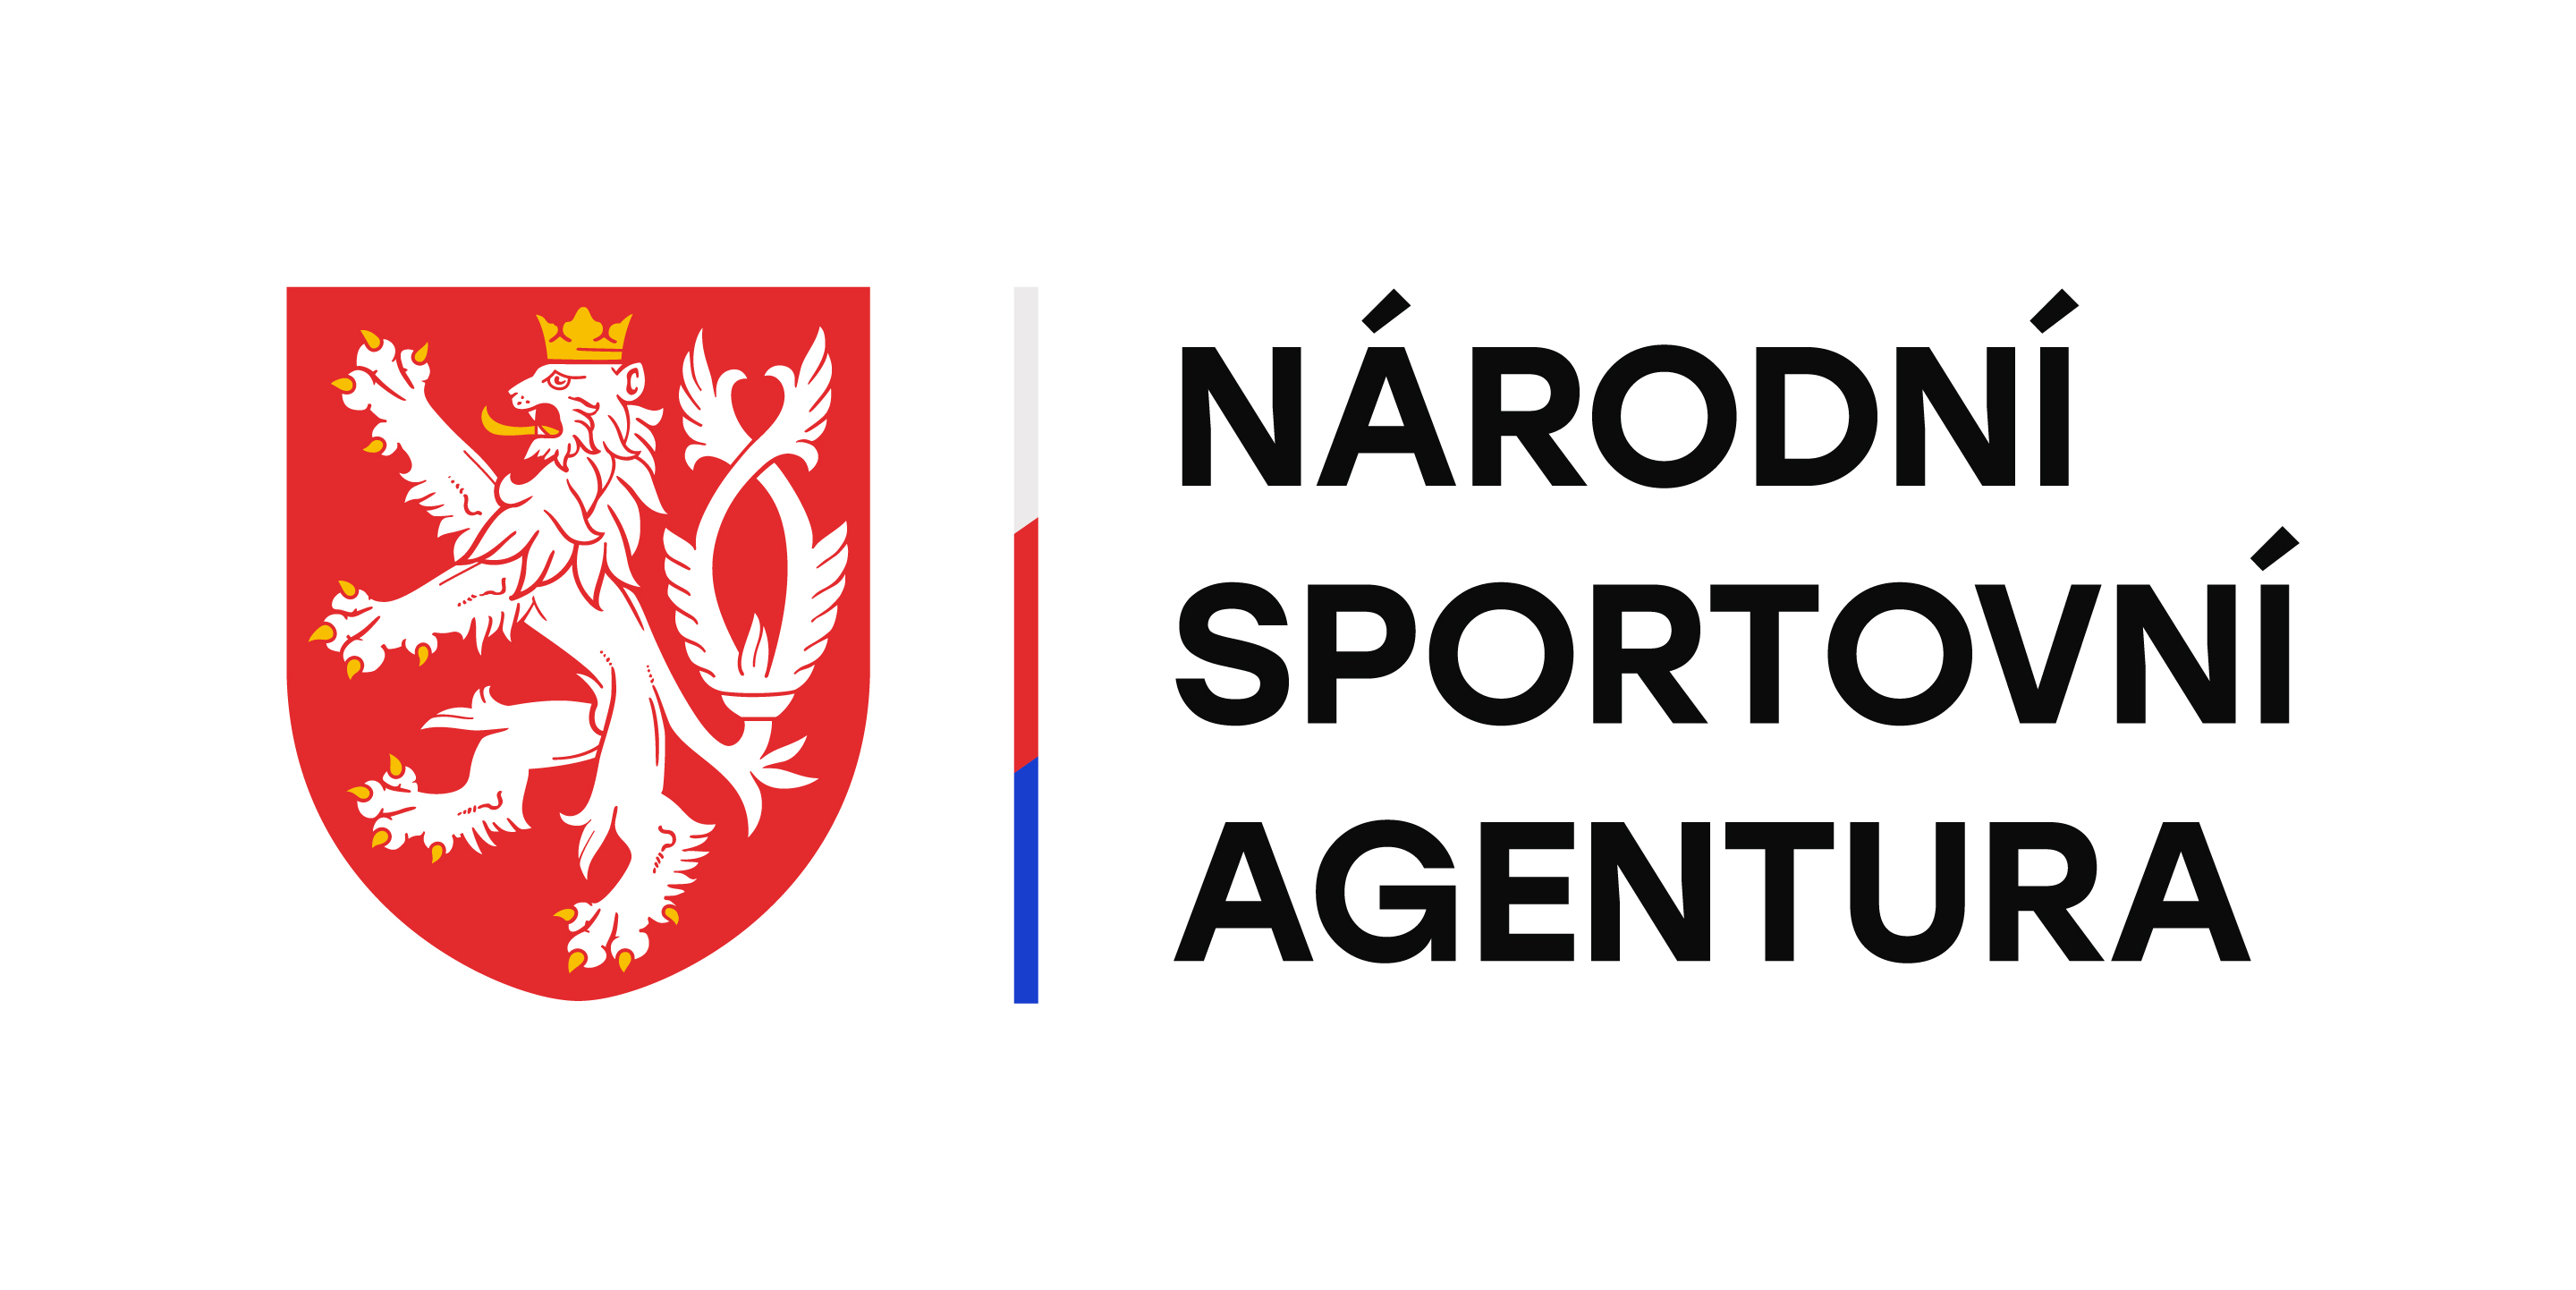 logo Národní sportovní agentura